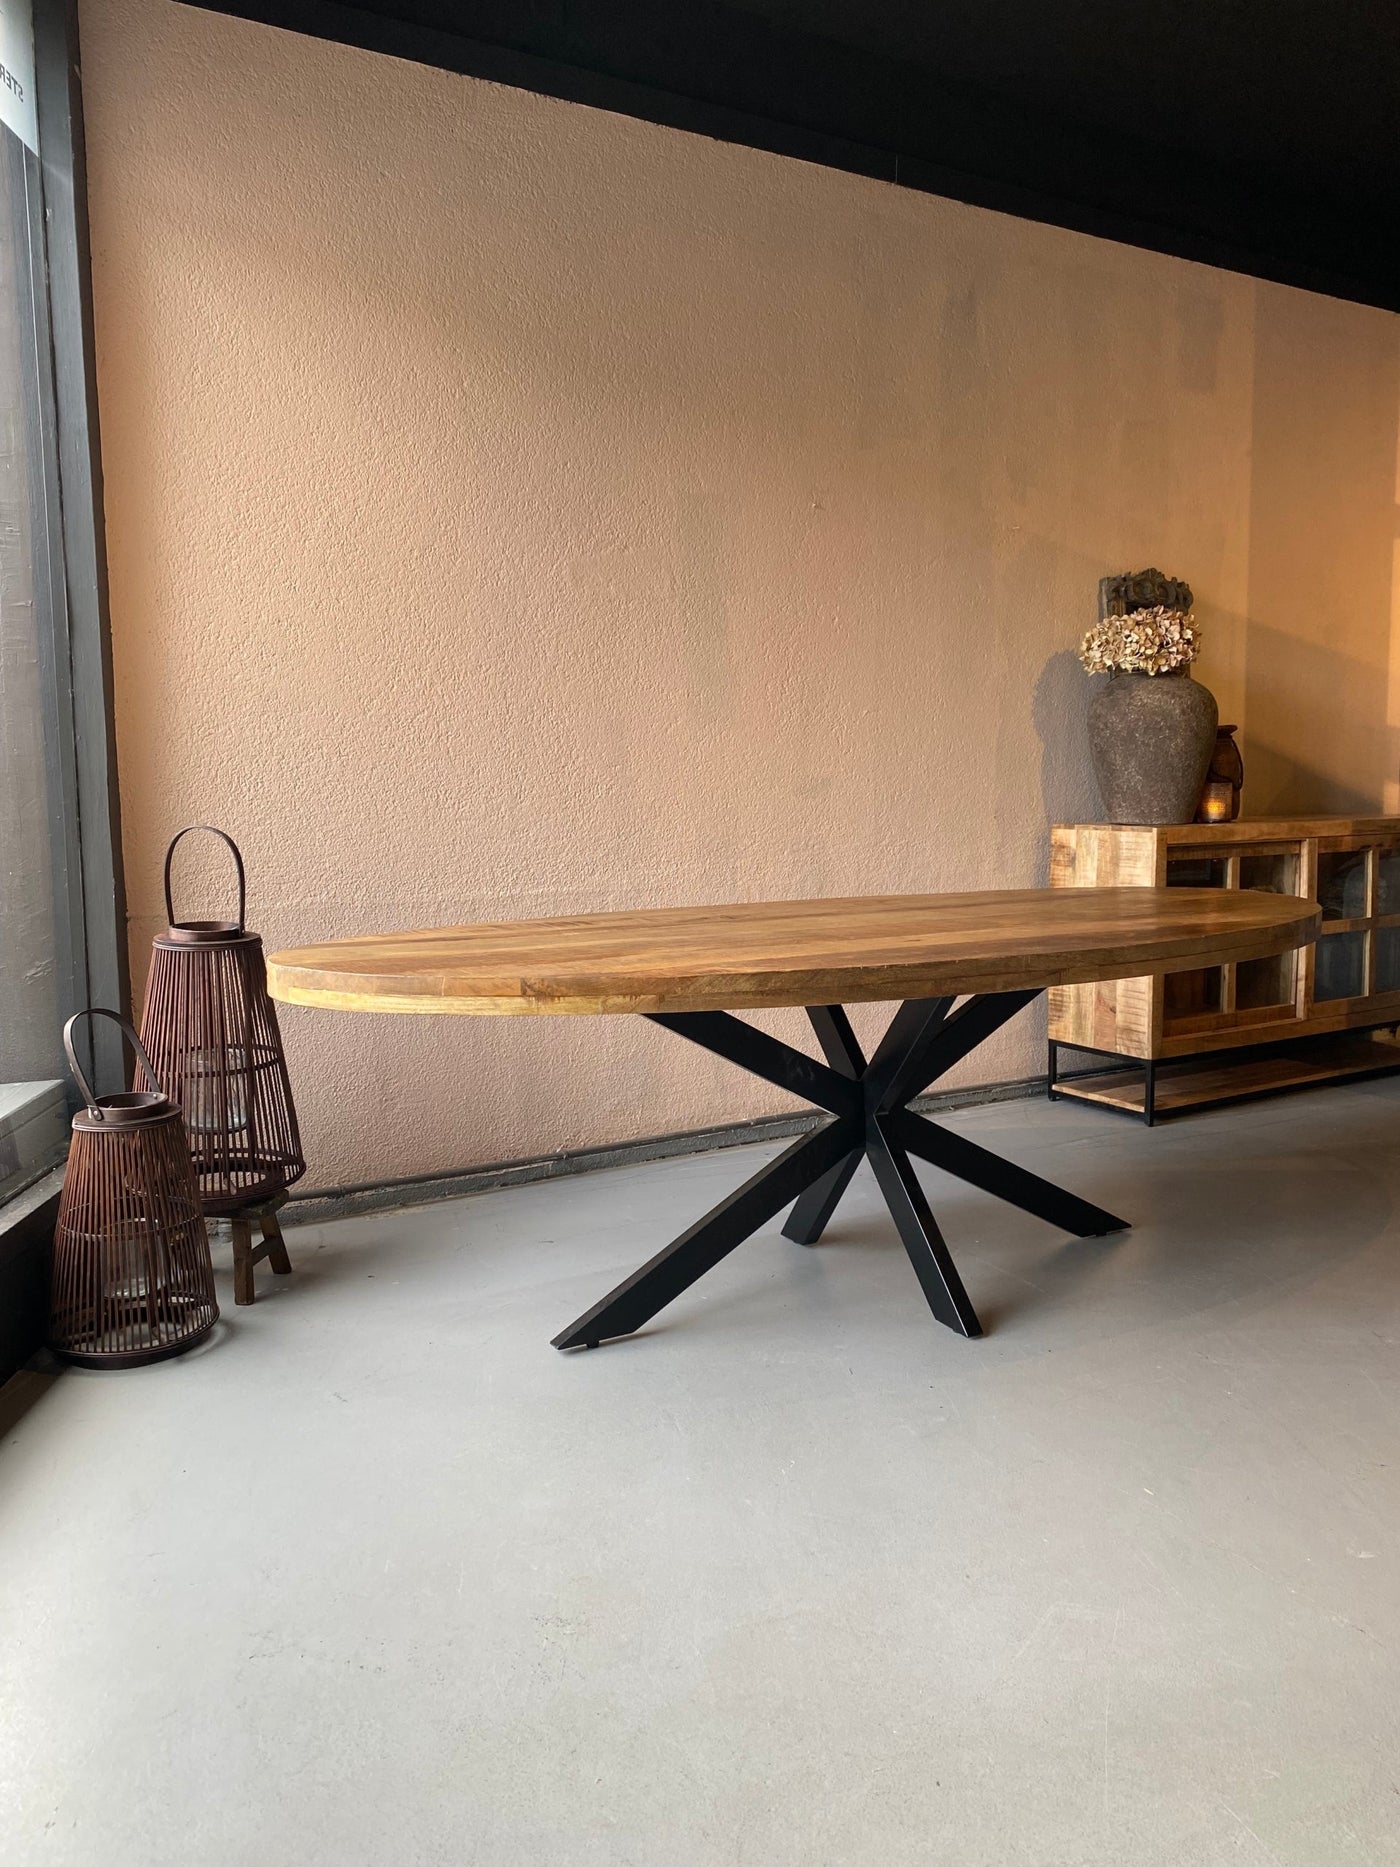 Eettafel ovaal – mango hout – 180 cm